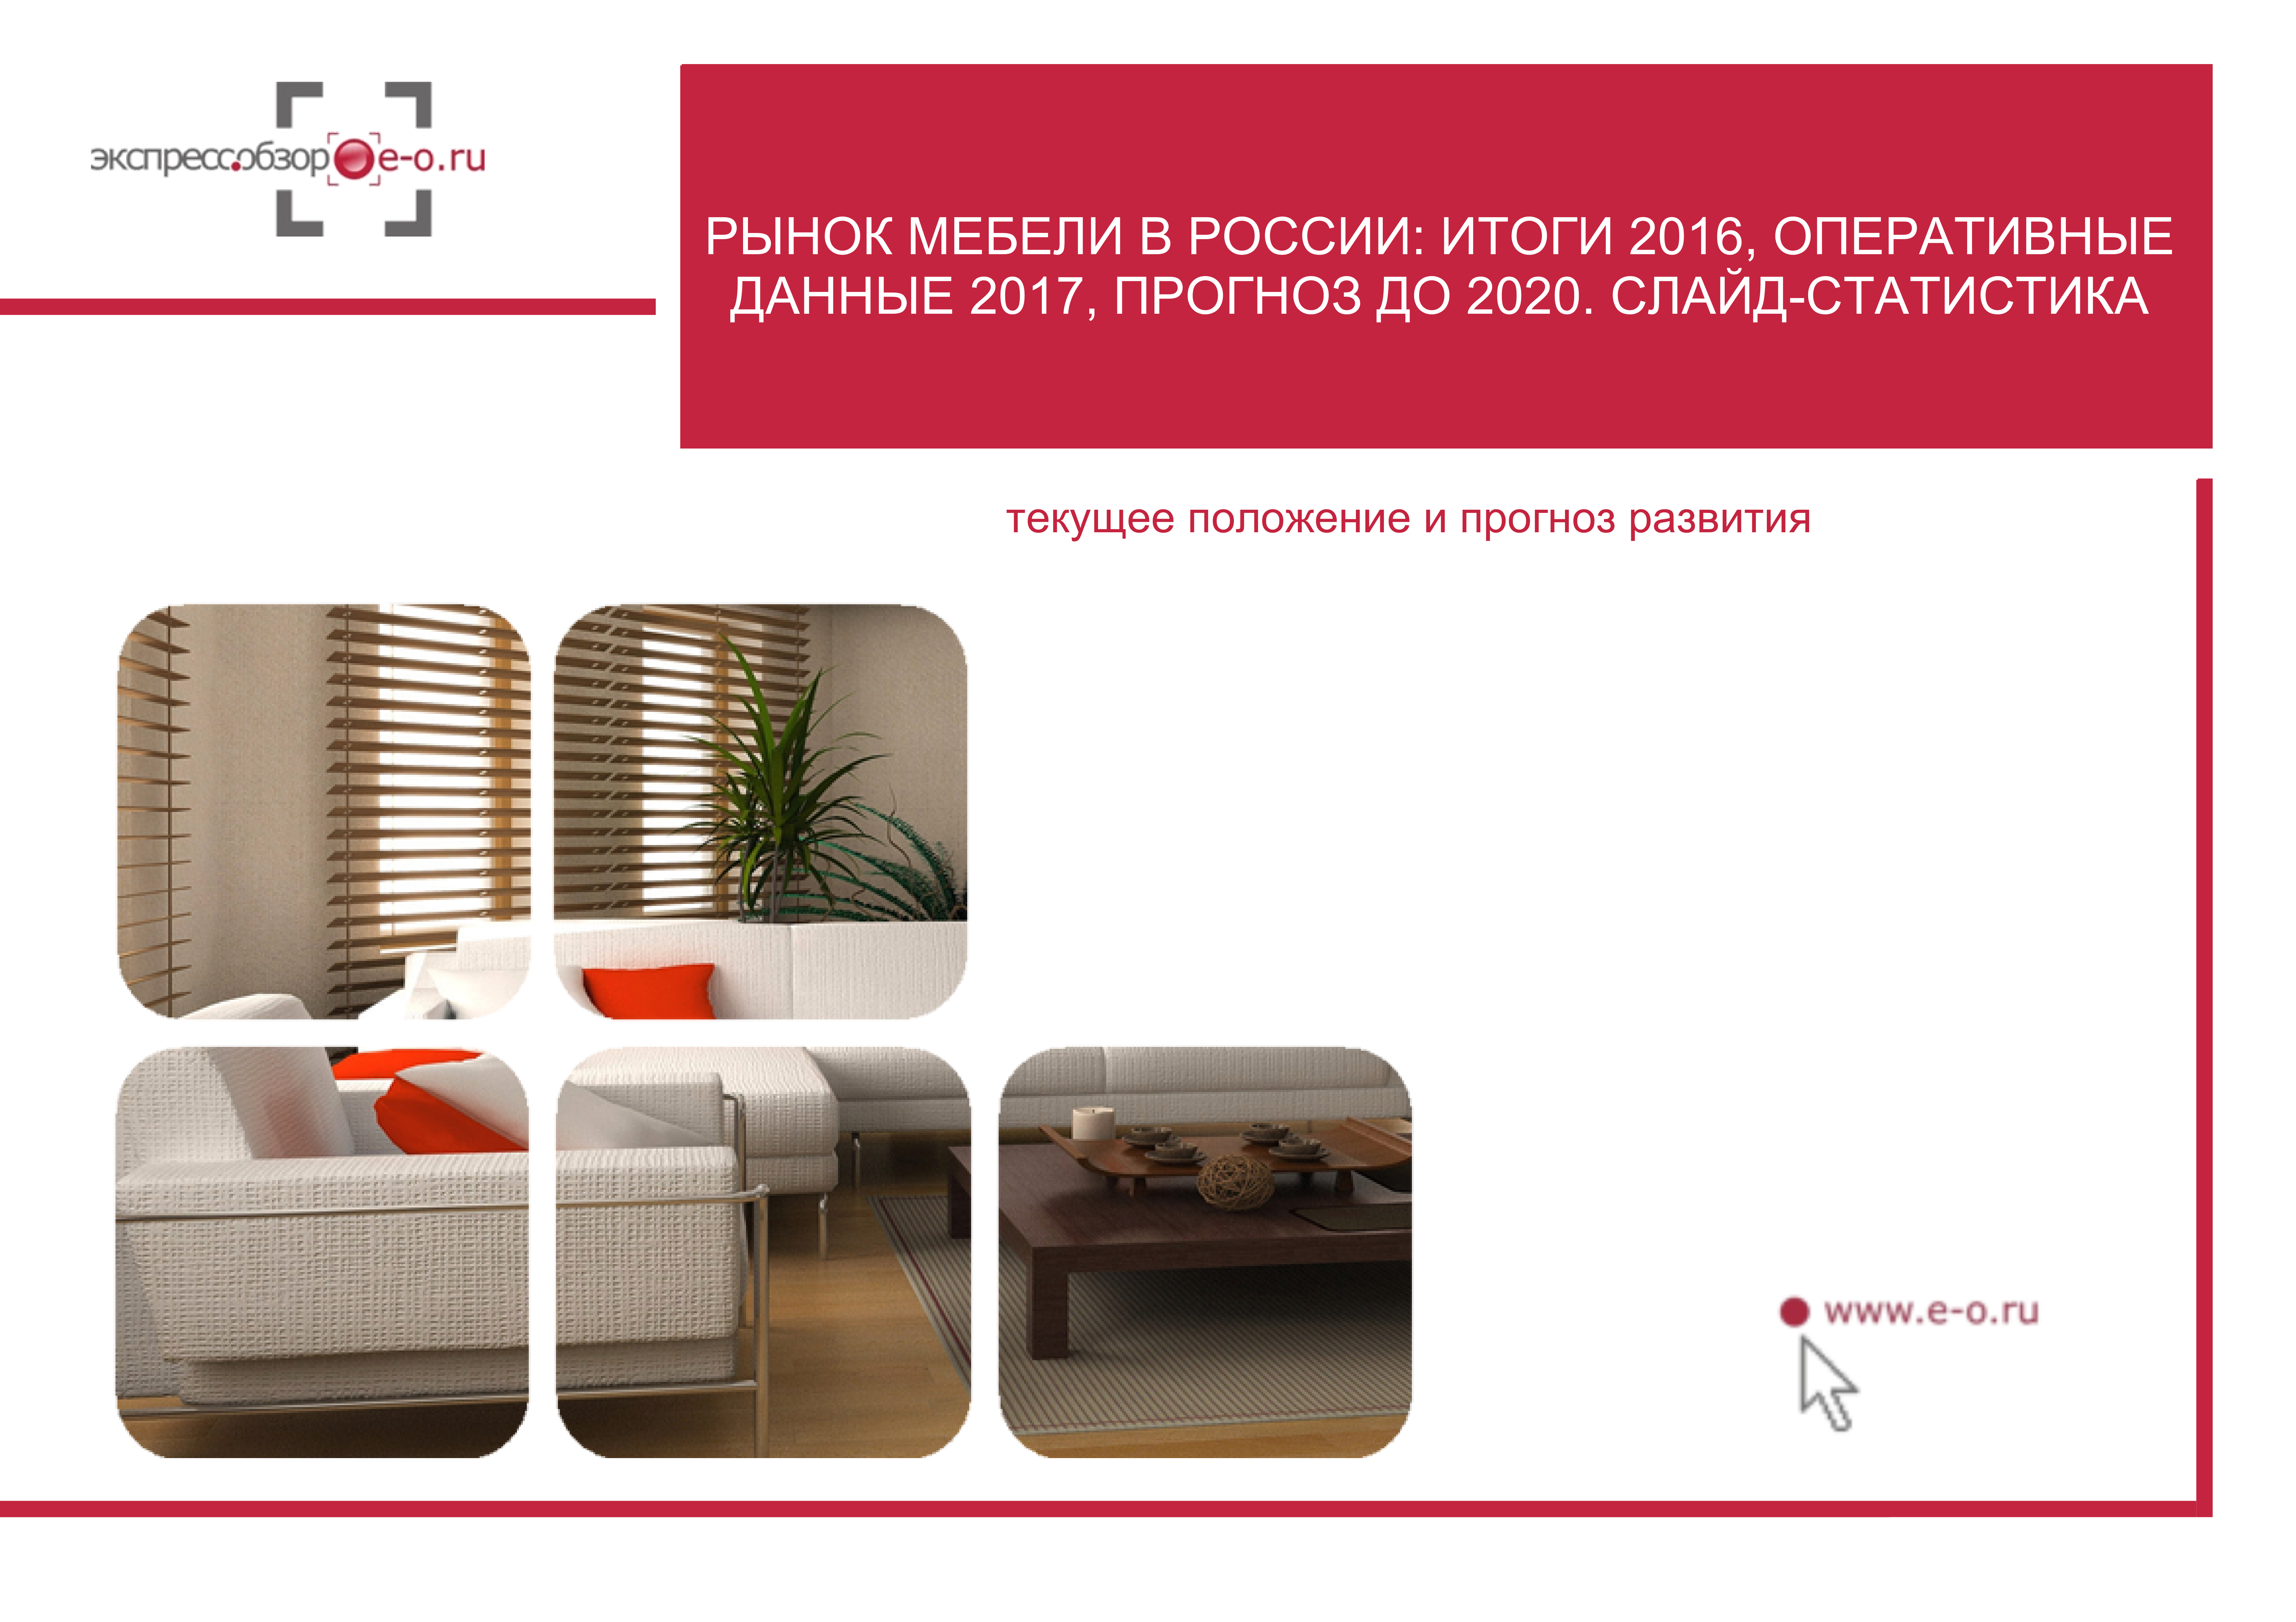 Анализ рынка мебели в России 2021: Итоги 2020, данные 2021 и прогноз до 2025 с учетом вступления России в ВТО